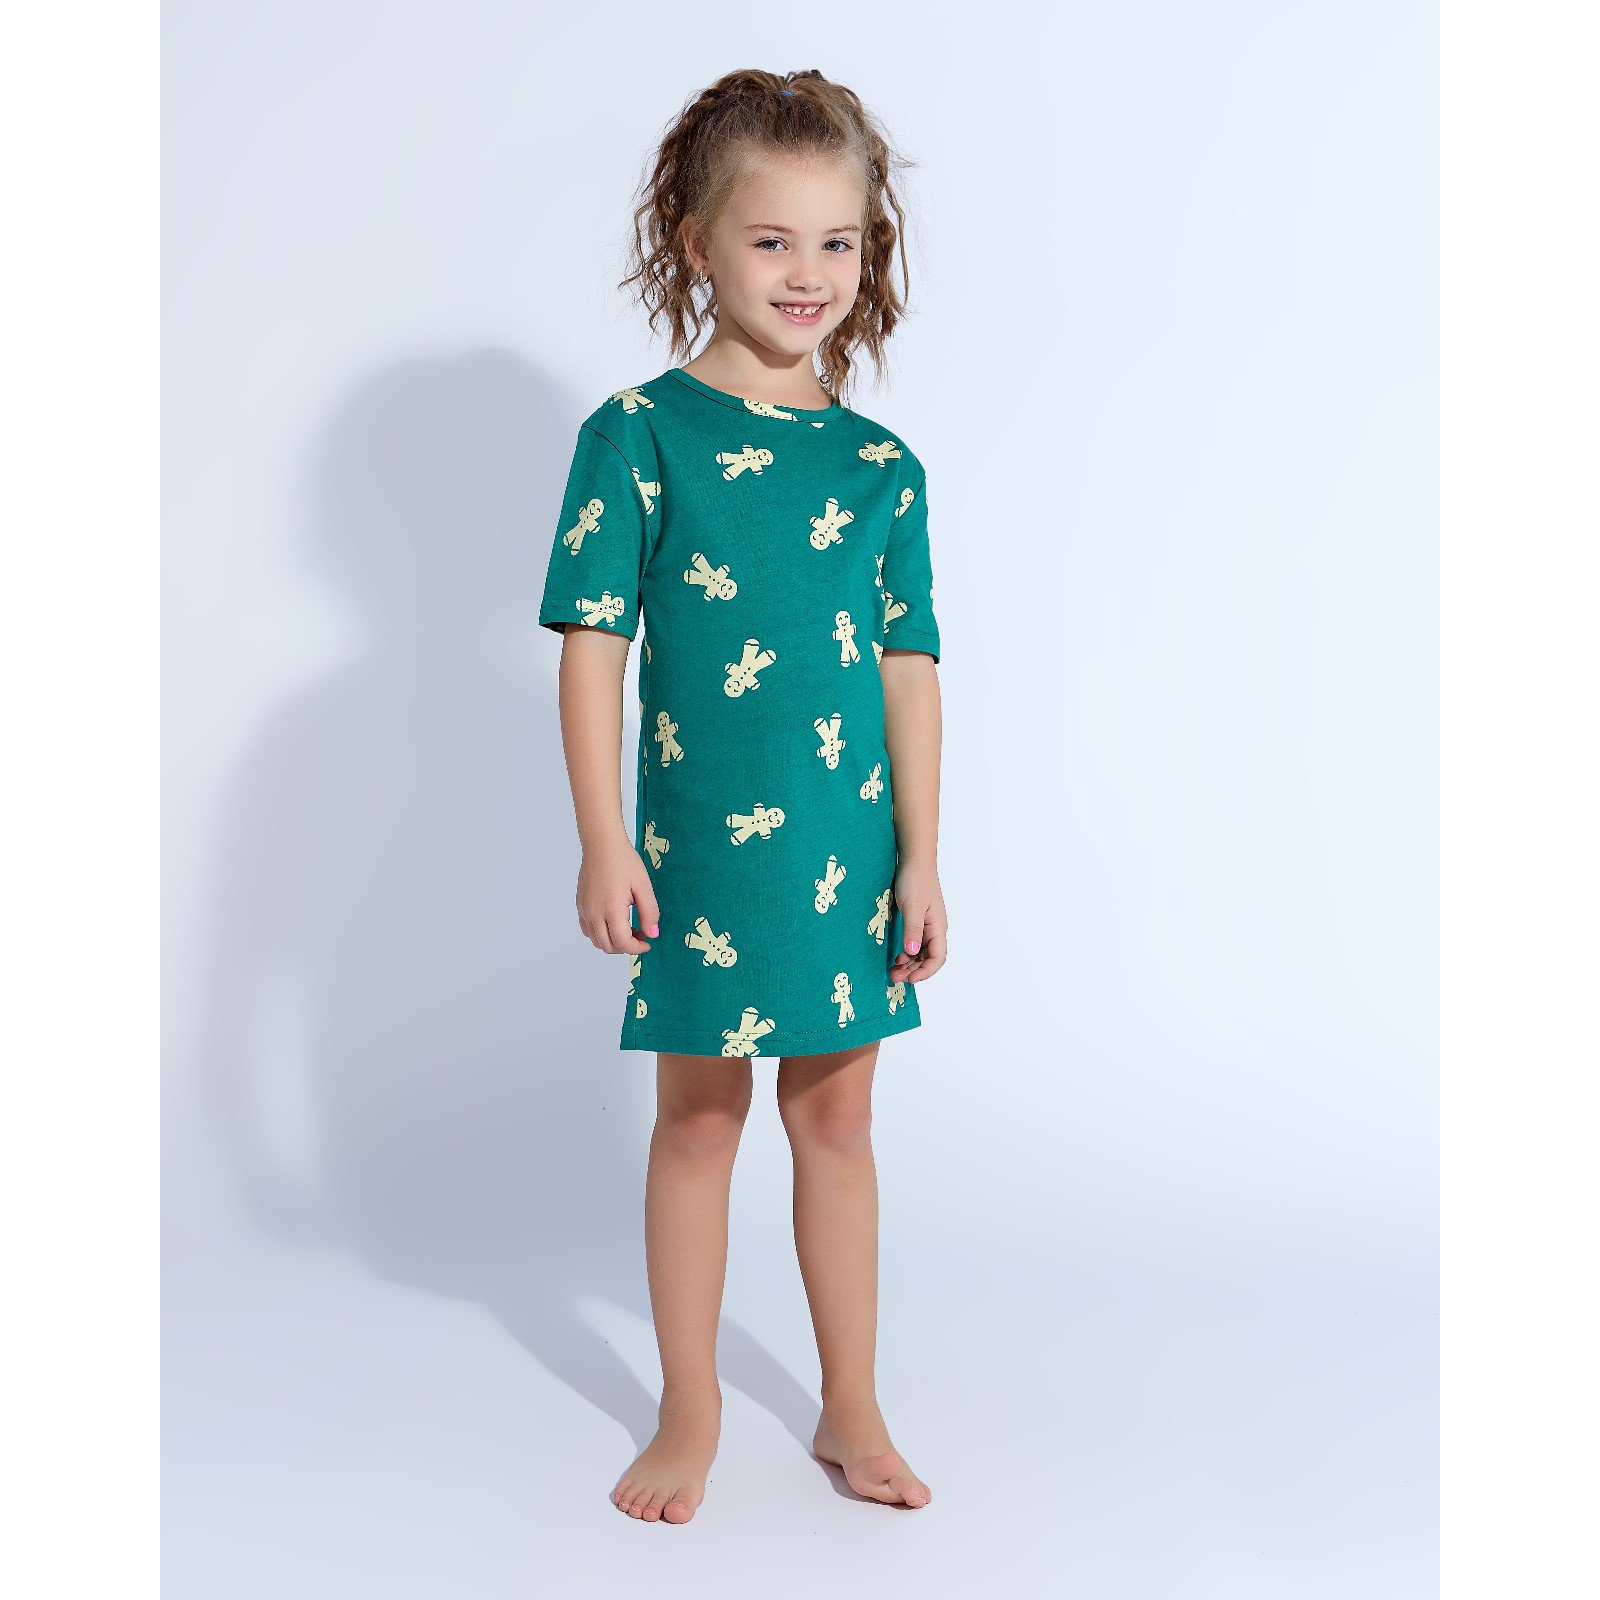 Детская ночная сорочка Печеньки Цвет: Зелёный (5 лет), размер 5 лет mak600416 Детская ночная сорочка Печеньки Цвет: Зелёный (5 лет) - фото 1